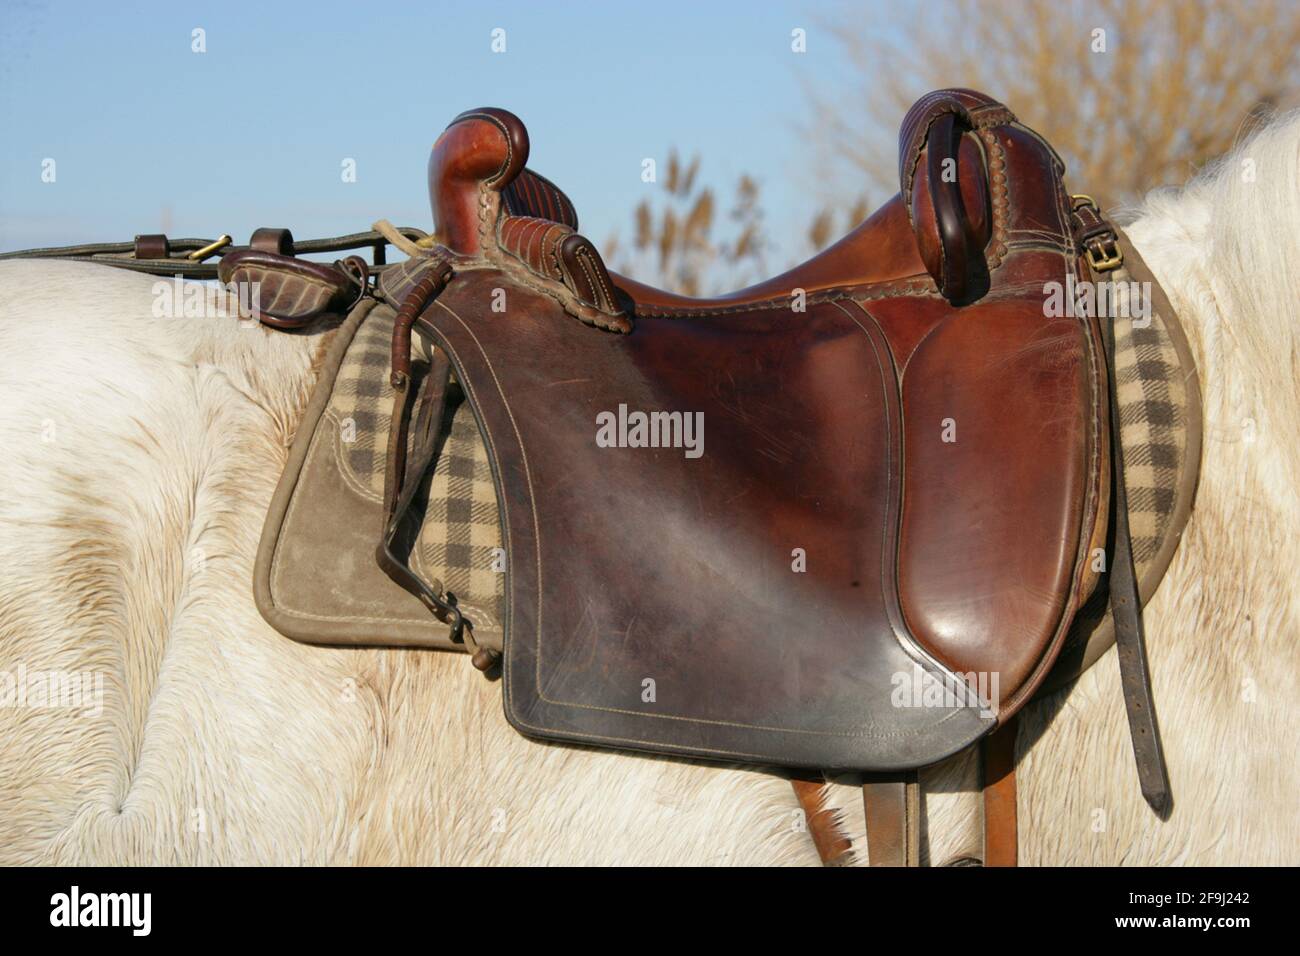 Traditional saddle, Camargue-style. France Stock Photo